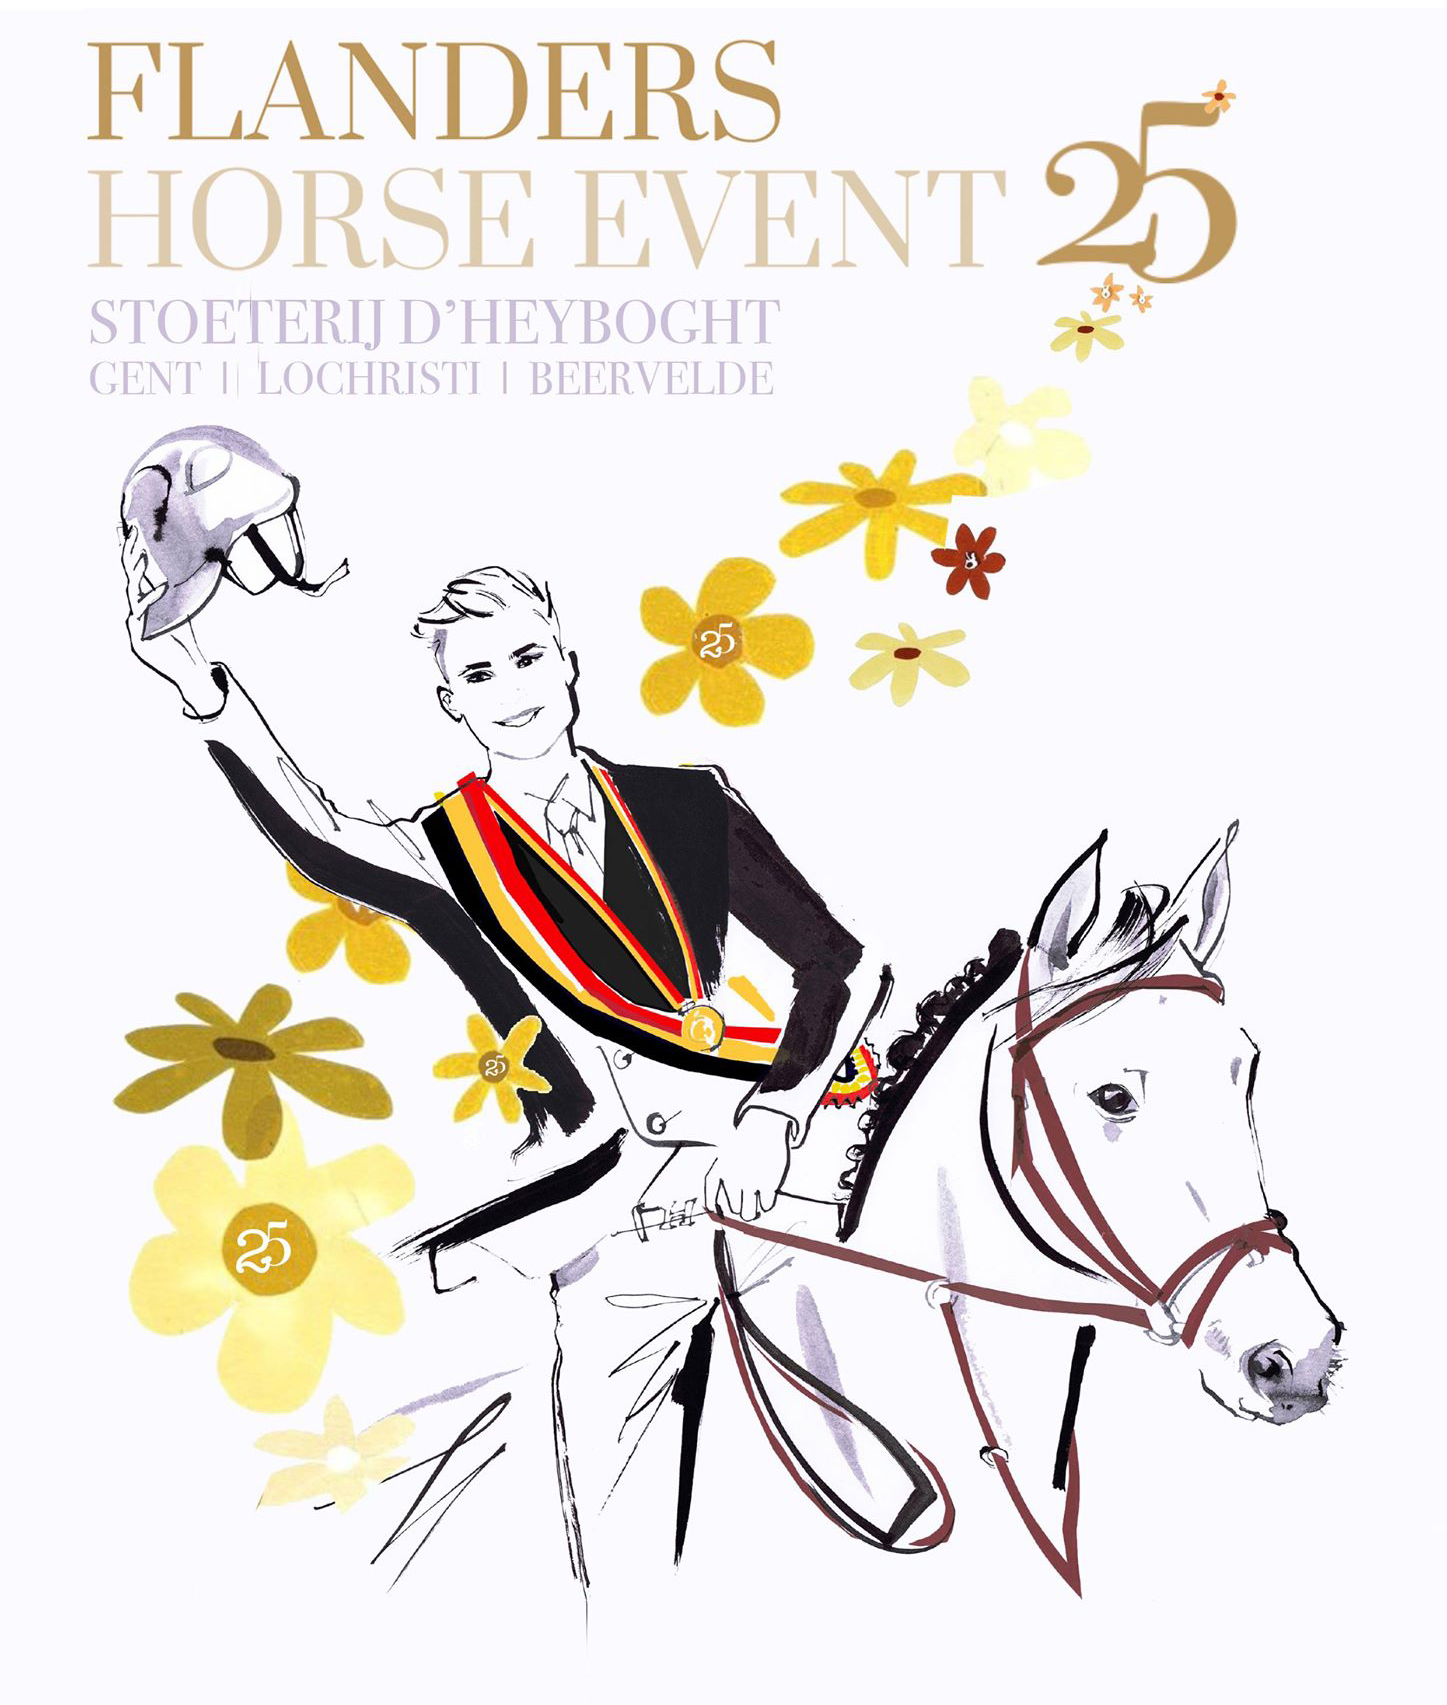 Flanders Horse Event maakt data  Zilveren verjaardag bekend